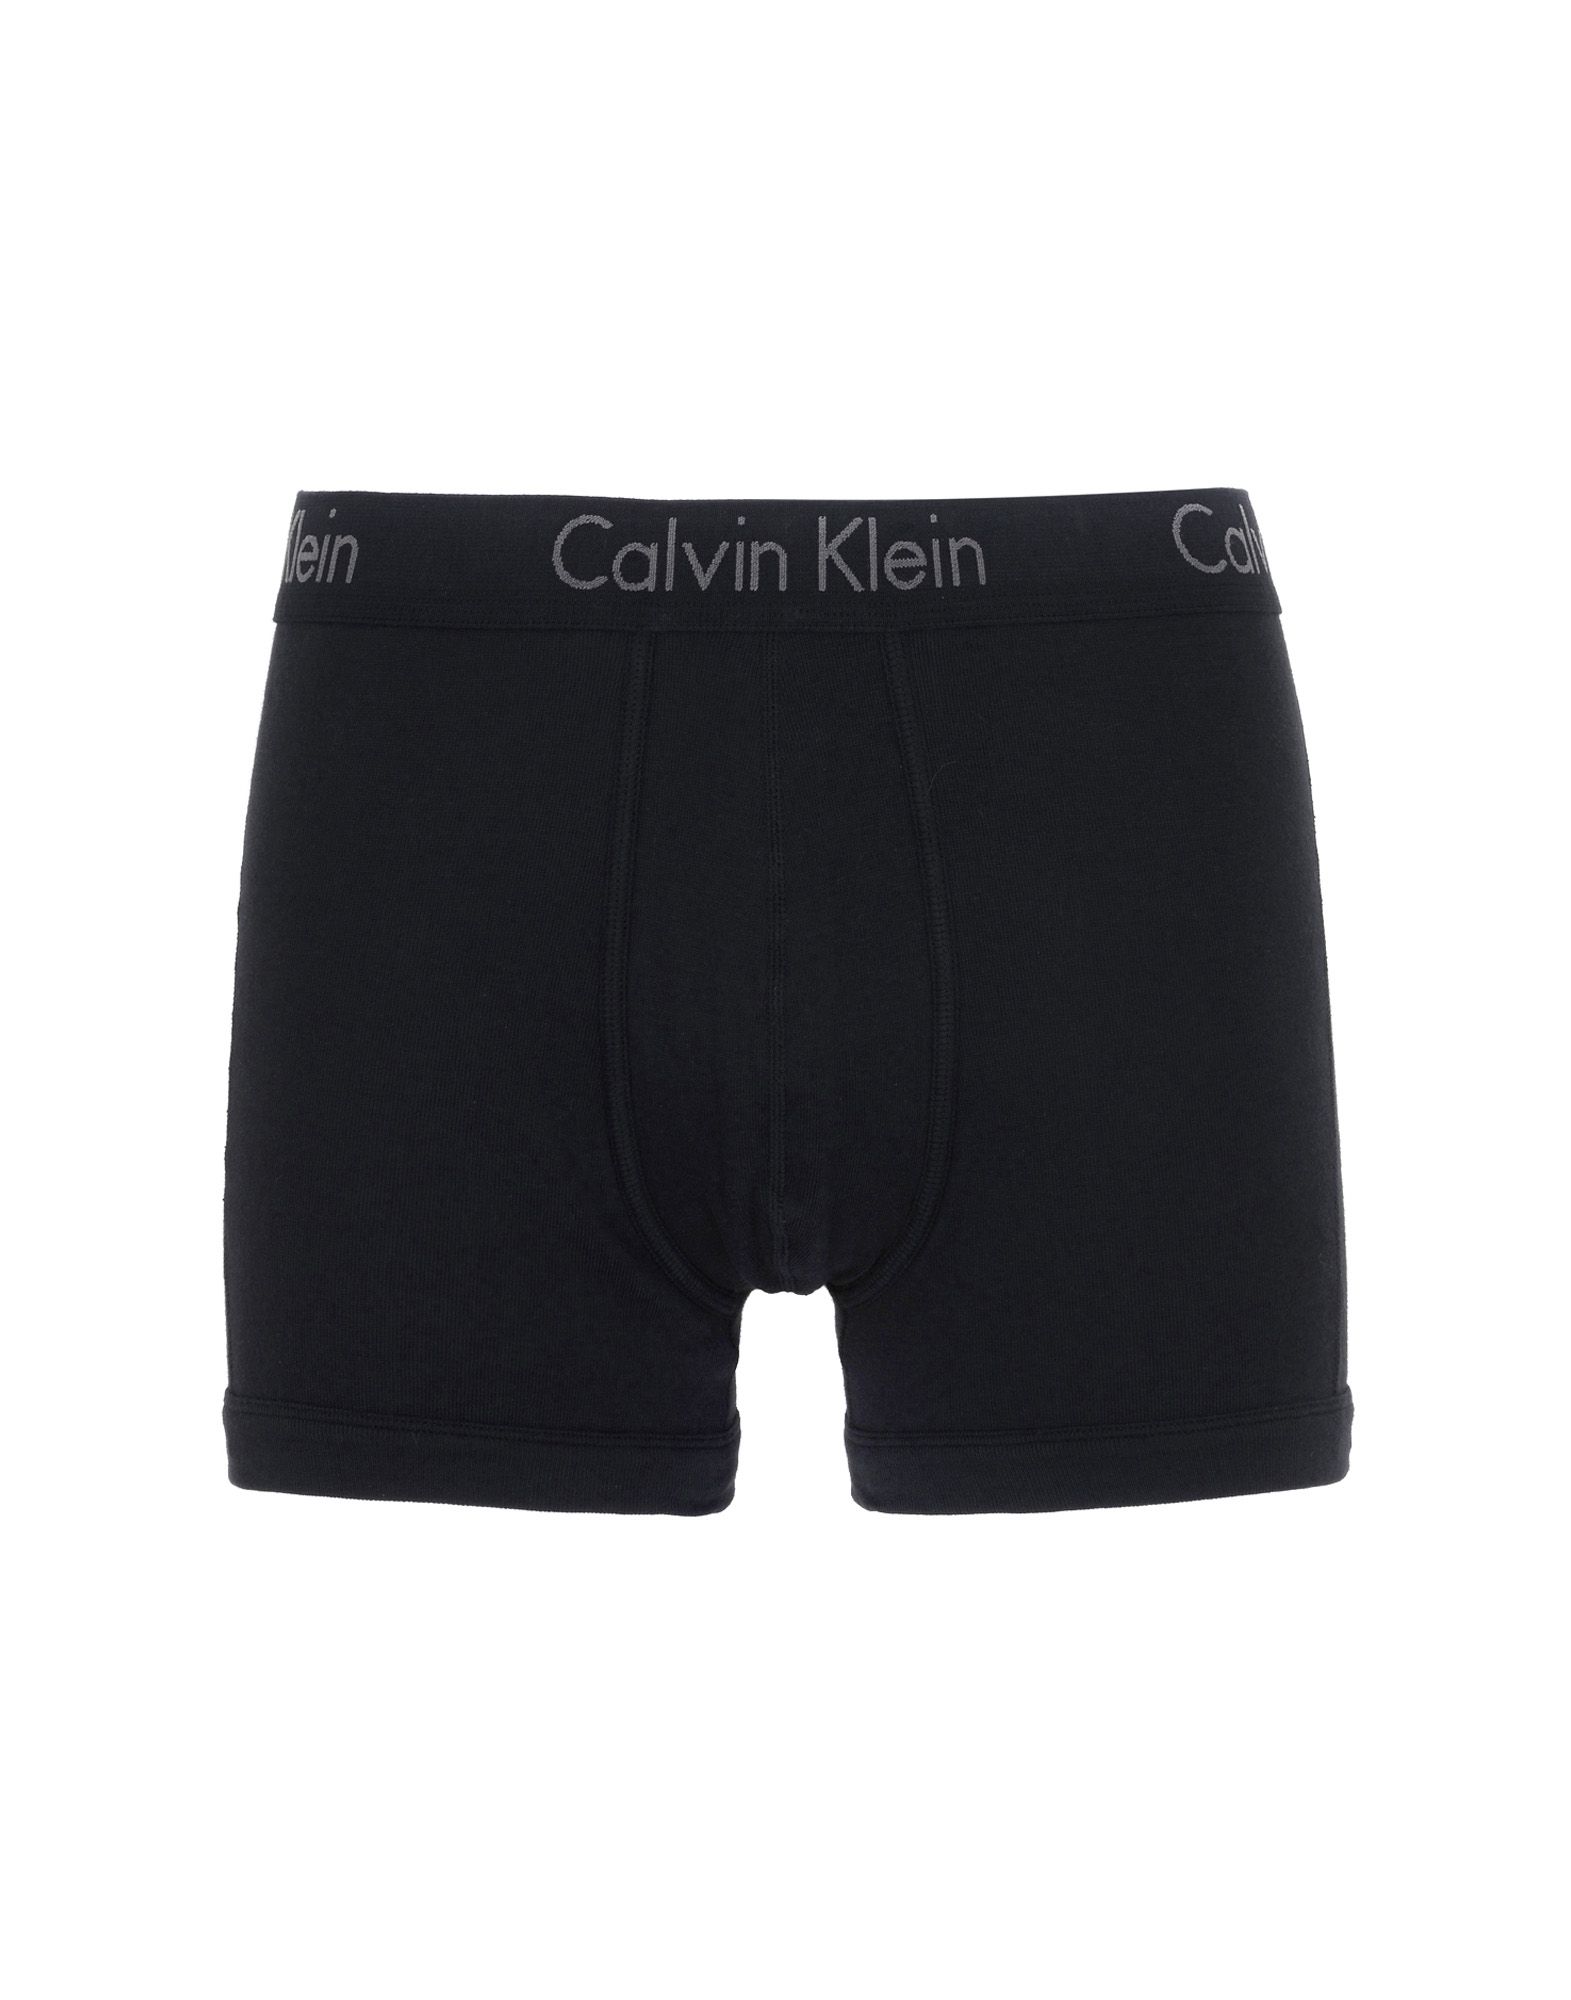 《送料無料》CALVIN KLEIN UNDERWEAR メンズ トランクス ブラック S コットン 100%